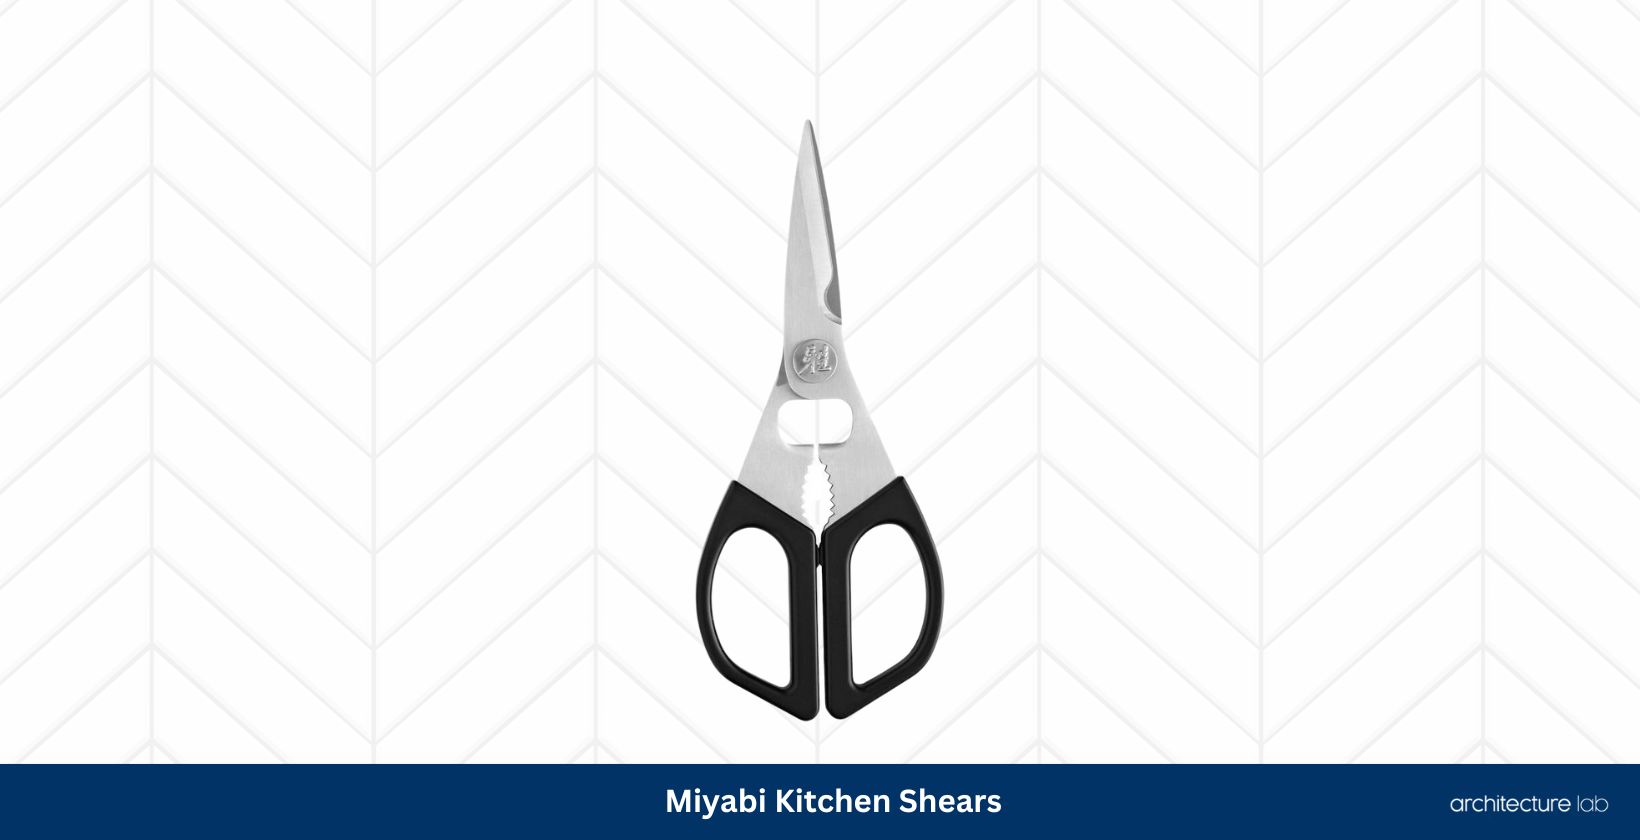 Miyabi kitchen shears0